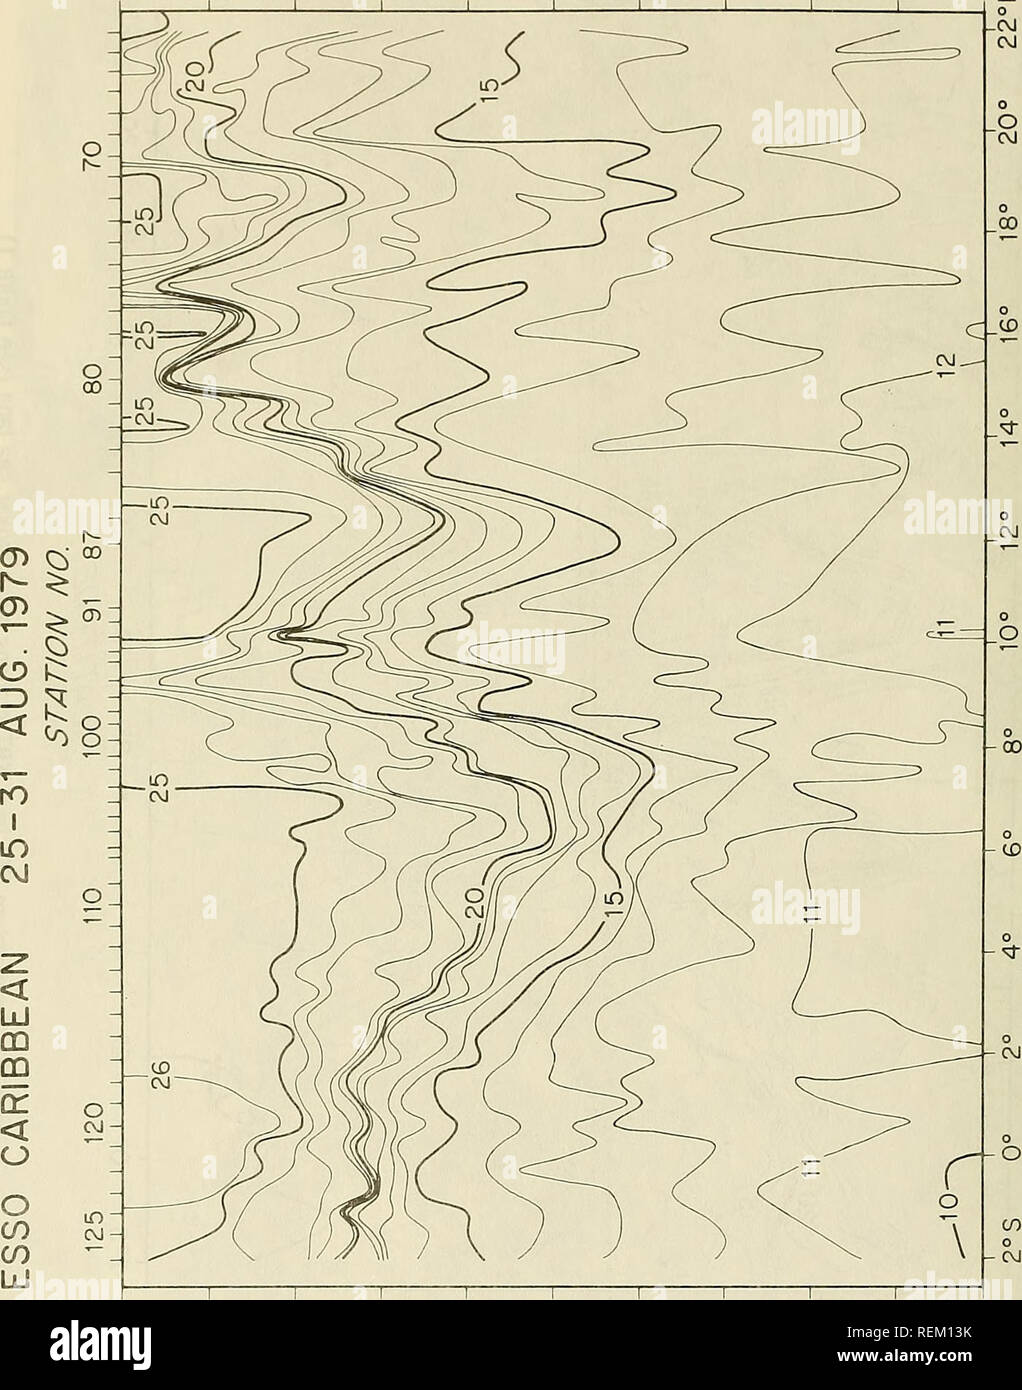 . Circolazione e proprietà oceanografiche nel bacino somalo come osservato durante il 1979 monsone sud-ovest. Oceanografia; correnti oceaniche; monsoni. Ui C3) C^ o 0 O ^ CO CO k; .0 H è --J CO CD X &lt; LU CD CD o 0 &lt; CM 0 0 C/) in CO â ^ LU 0 0 0 0 0 0 0 0 00 ro &LT;d- (3^313^) HldJO 48. Si prega di notare che queste immagini vengono estratte dalla pagina sottoposta a scansione di immagini che possono essere state migliorate digitalmente per la leggibilità - Colorazione e aspetto di queste illustrazioni potrebbero non perfettamente assomigliano al lavoro originale. Beatty, William H; Bruce, John G; Guthrie, Robert C; Stati Uniti. Oceanographi navale Foto Stock